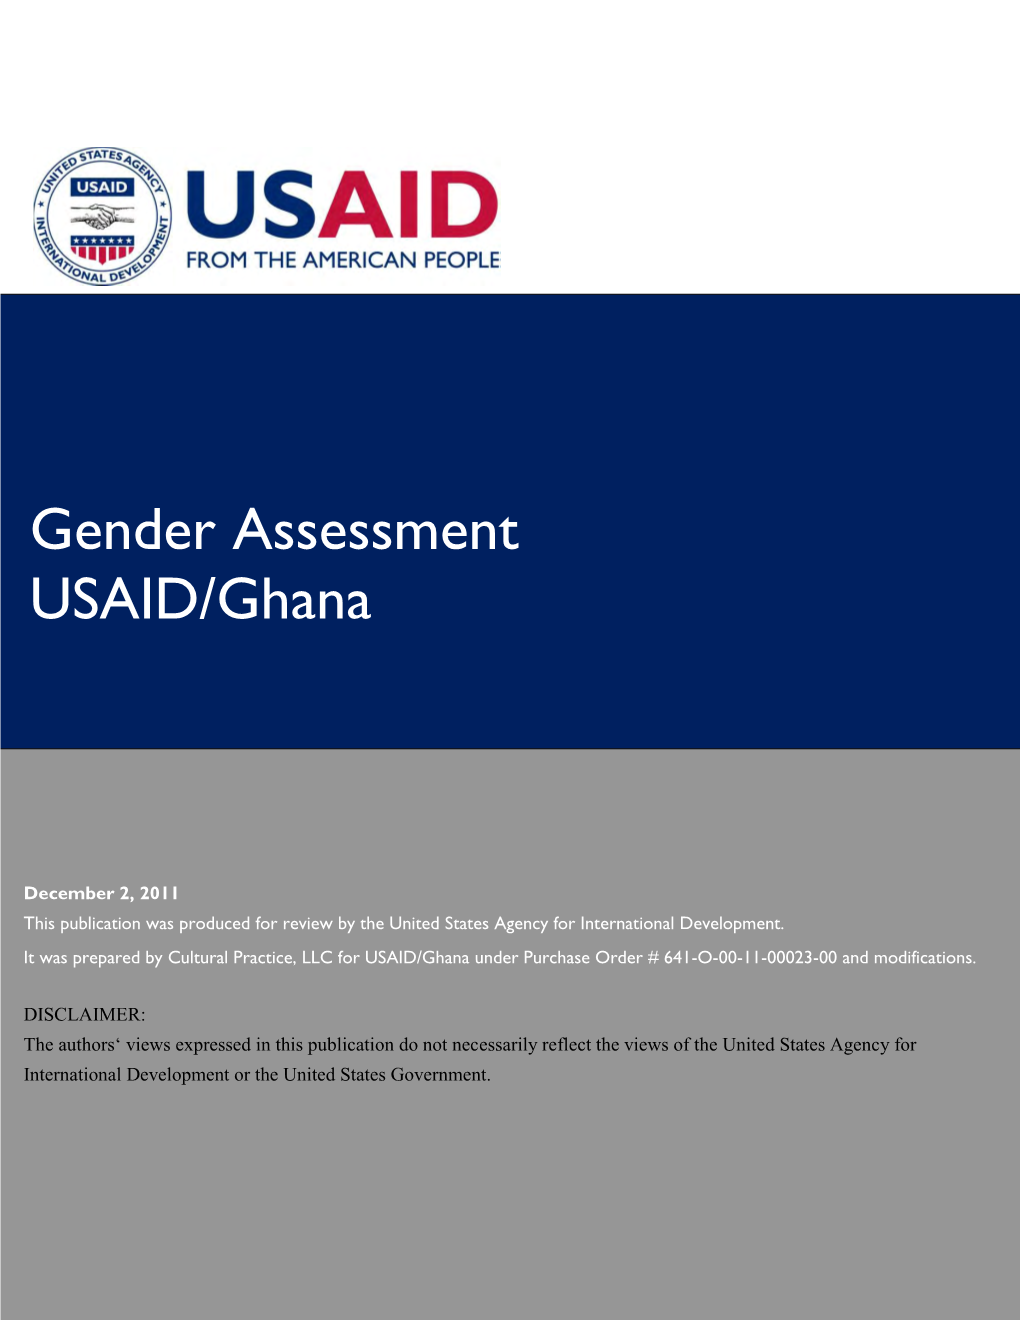 Gender Assessment USAID/Ghana